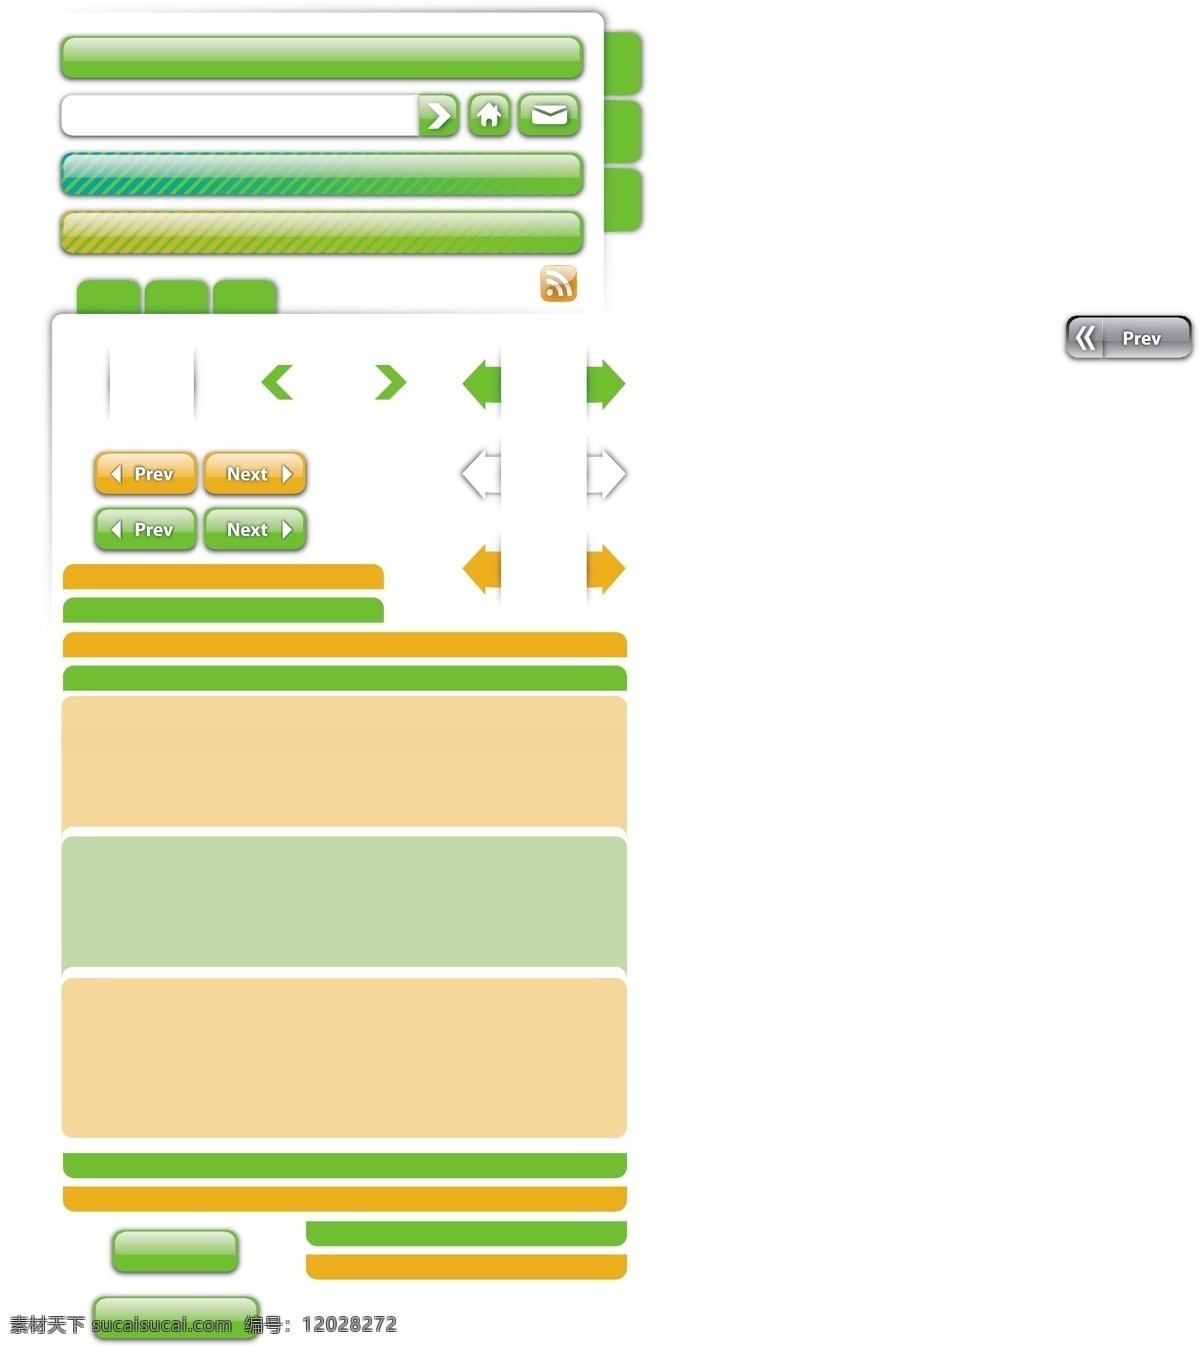 ui工具包 绿色 光滑 向量 web 按钮 橙 高分辨率 接口 绿 免费 图形 病 媒 生物 时尚 原始的 高质量 质量 新鲜的 设计新的 ui元素 hd 元素 详细的 试剂盒 用户界面 工具箱 web工具包 搜索领域 形式 桌 棋类游戏 酒吧 矢量图